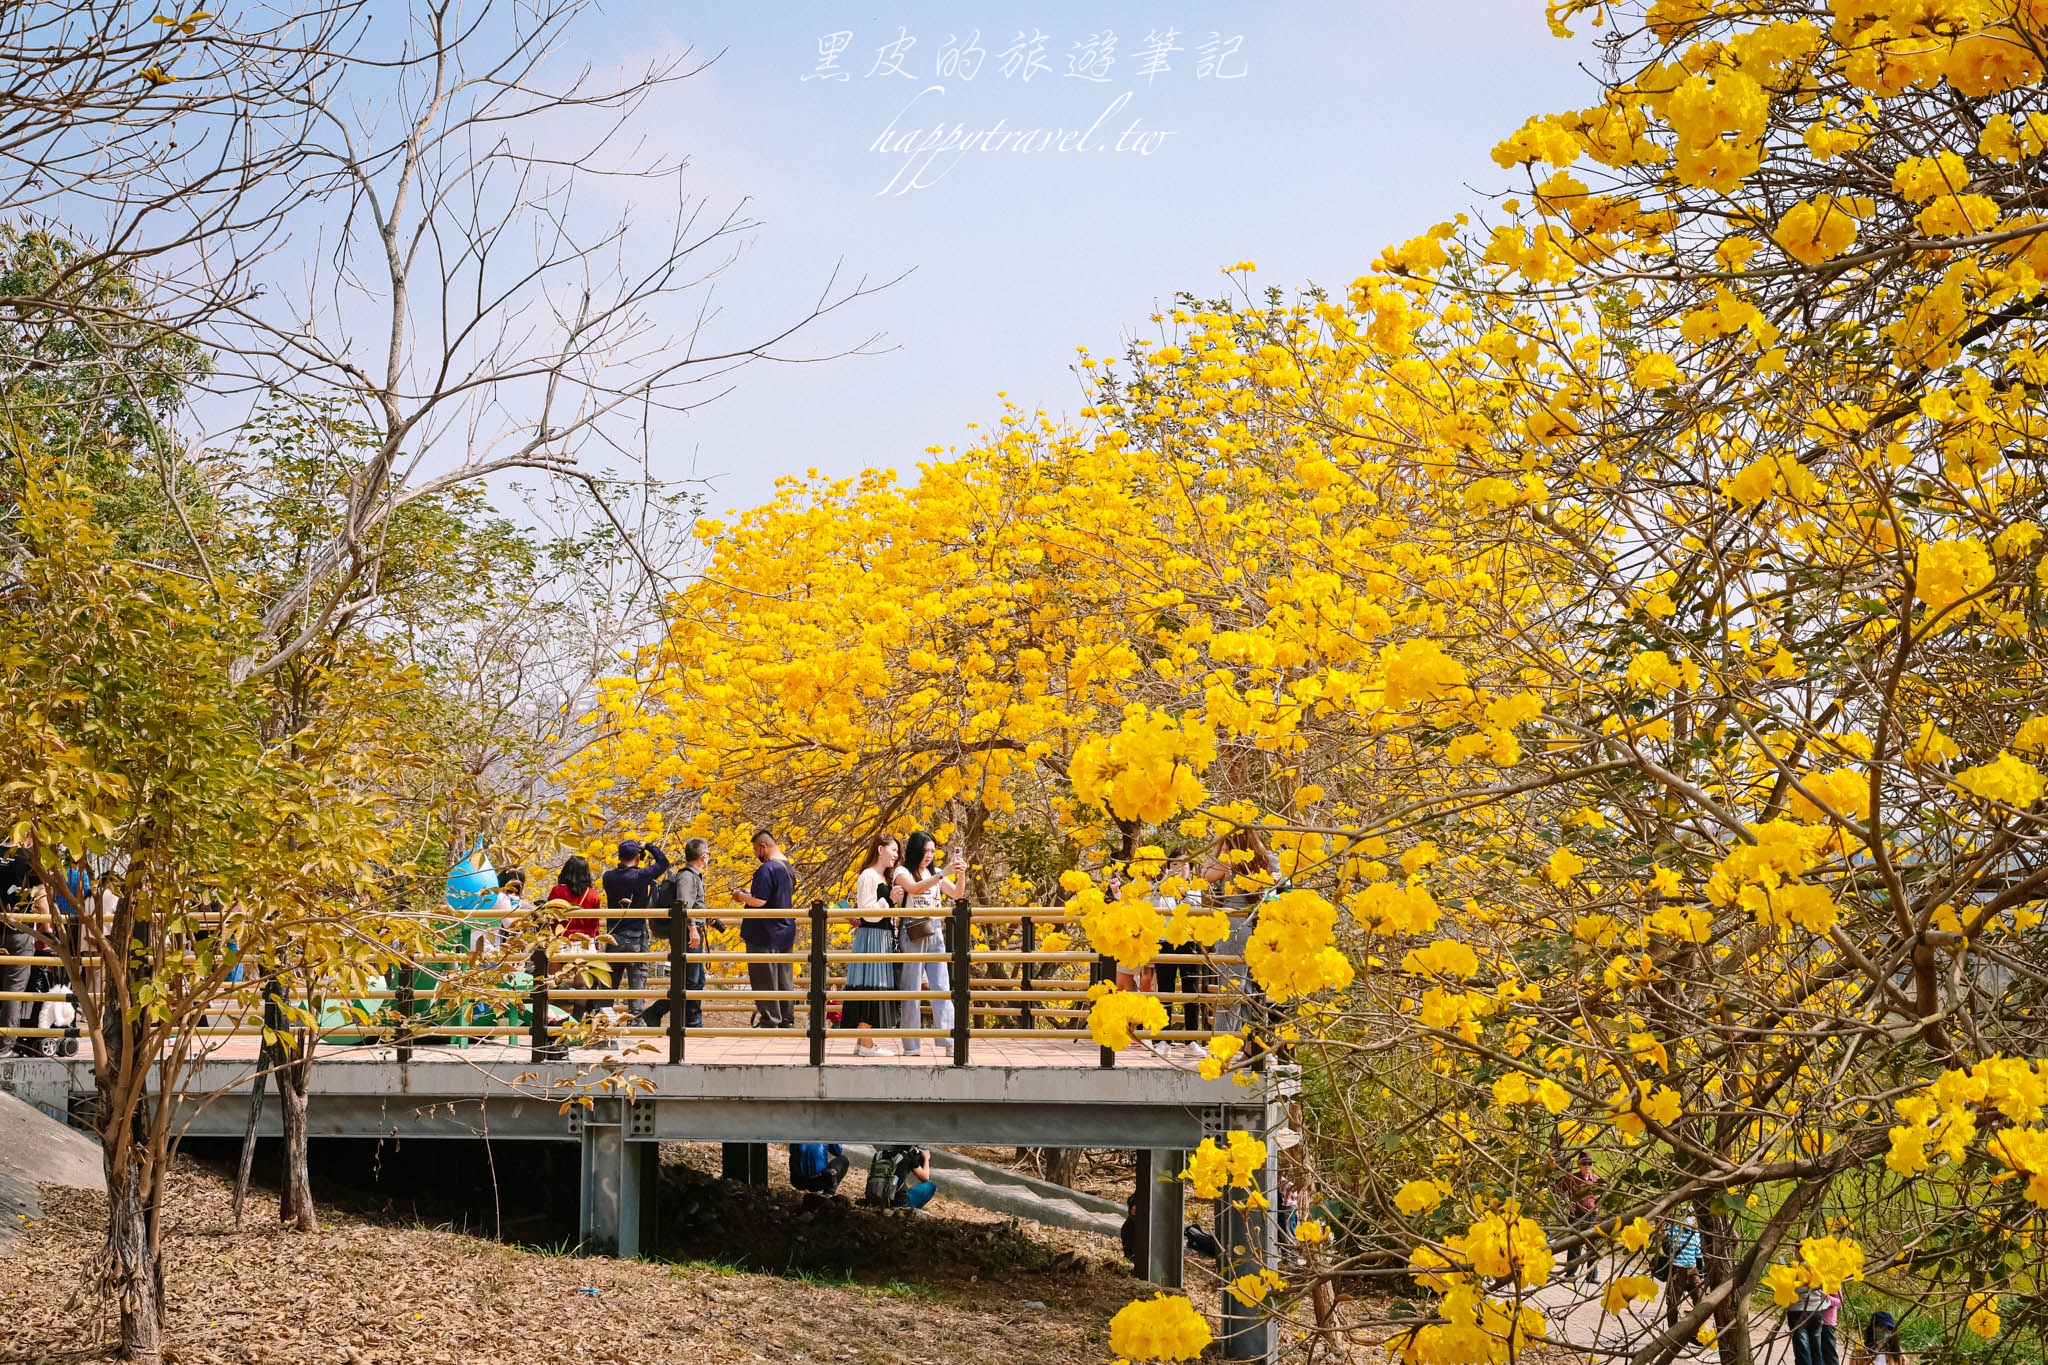 嘉義景點。軍輝橋步道黃花風鈴木｜綿延不絕的絕美黃金步道閃亮登場，怎麼拍都是一系列的韓風美照